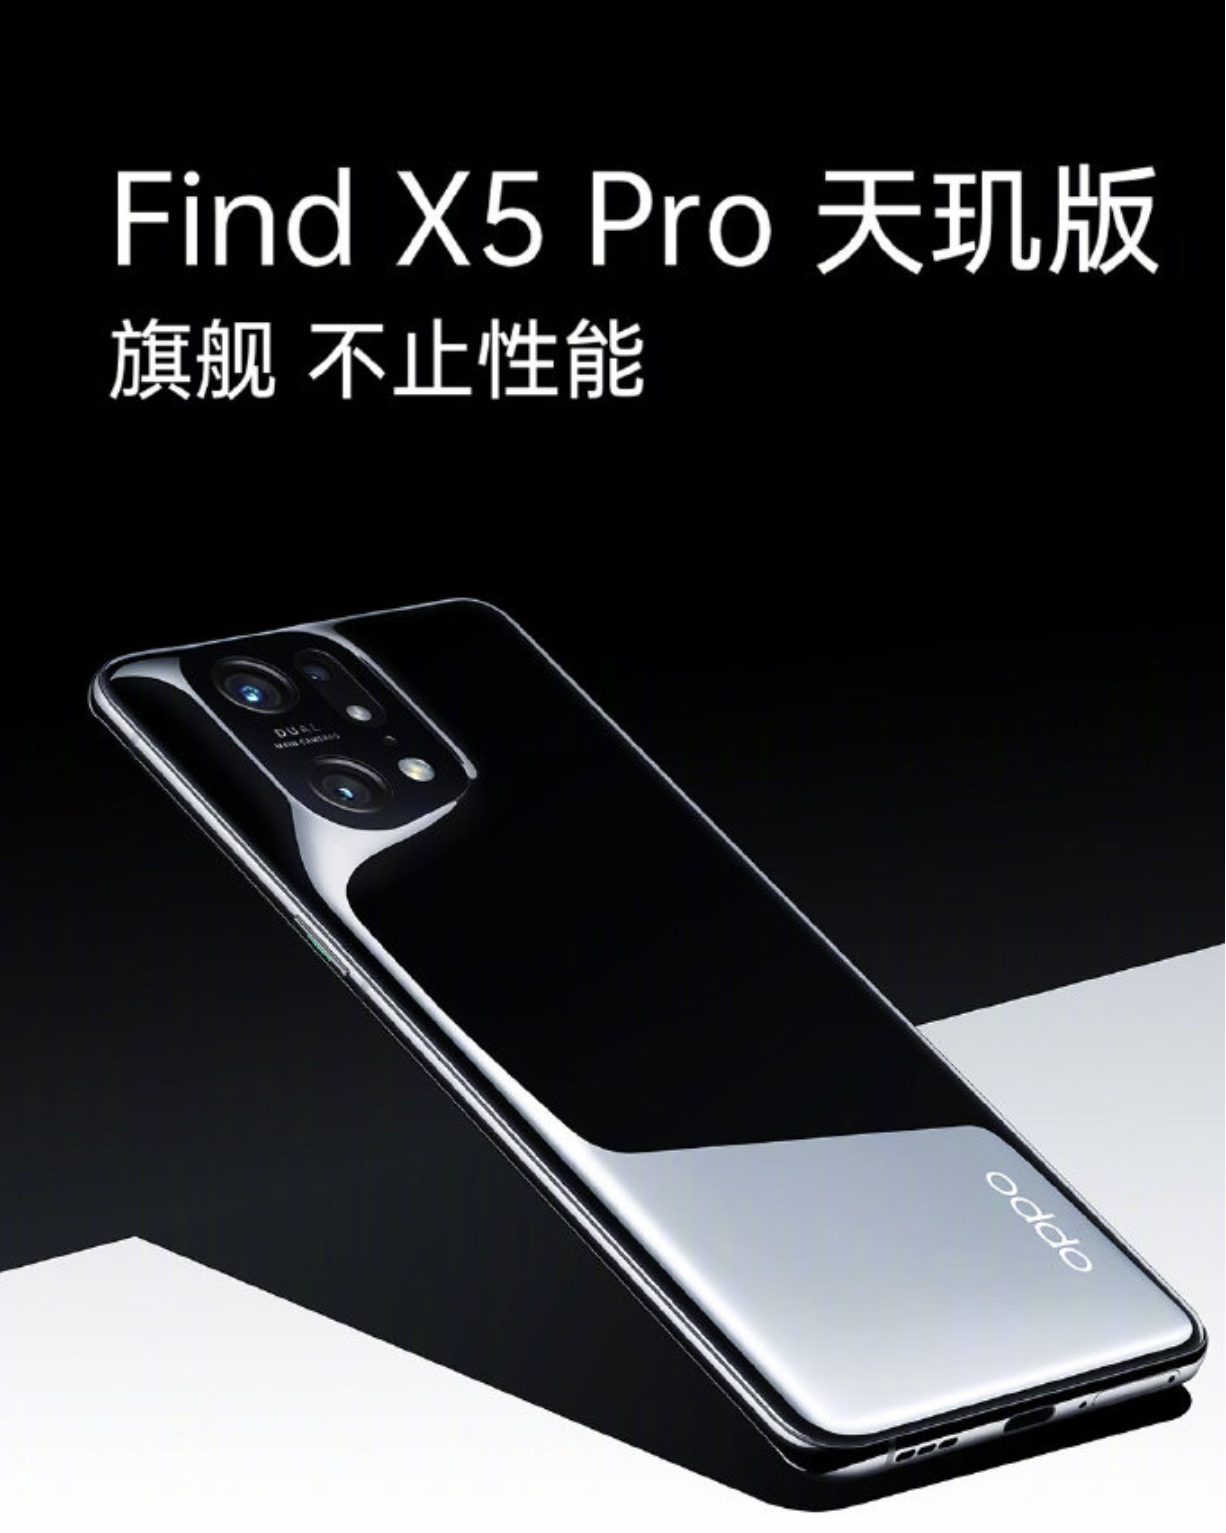 Find X5 Pro天玑版上市延期 K50 Pro被迫拿下首发